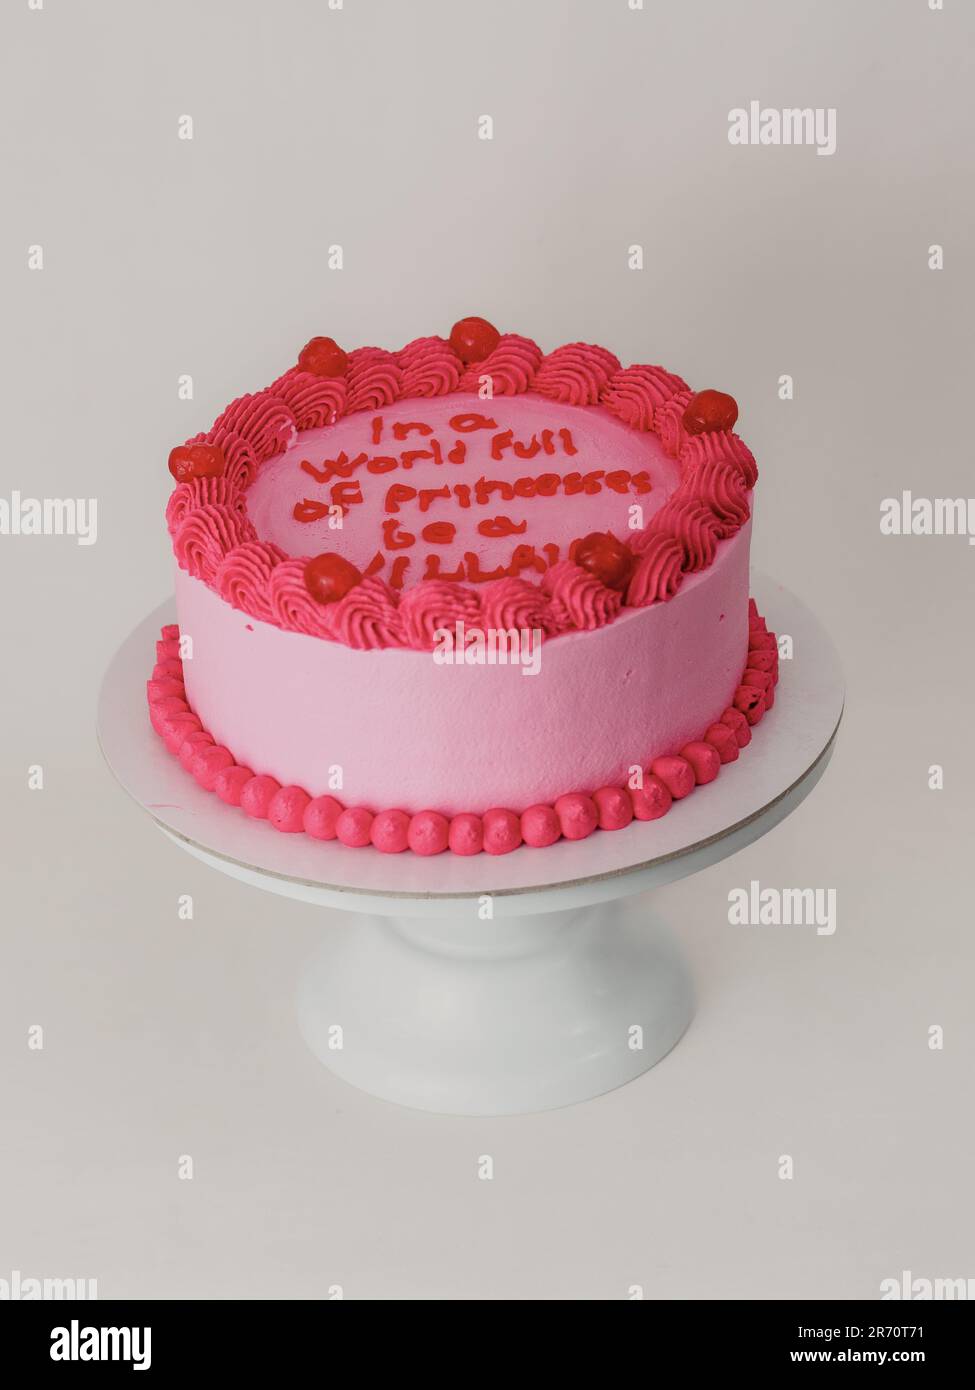 Gâteau de glaçage rose dépoli avec surmatelas amusant. Gâteau de fête.  Humour dans le concept alimentaire. Soyez fort, soyez mauvais Photo Stock -  Alamy